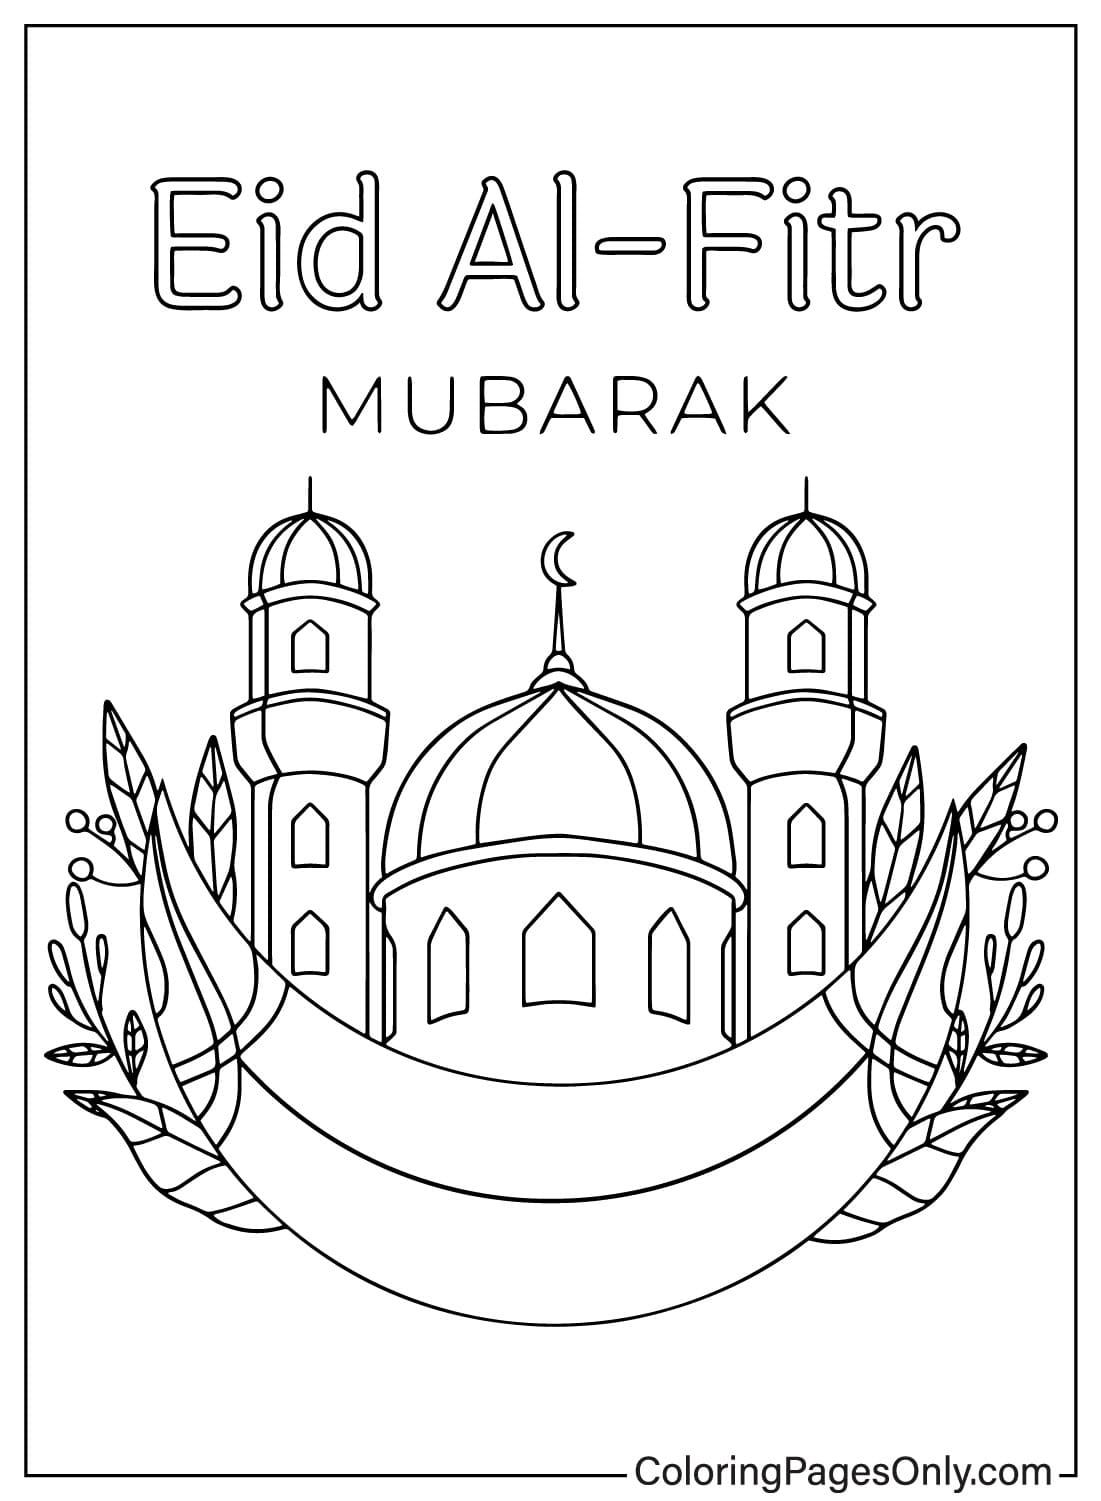 Folhas coloridas Eid Al-Fitr de Eid Al-Fitr